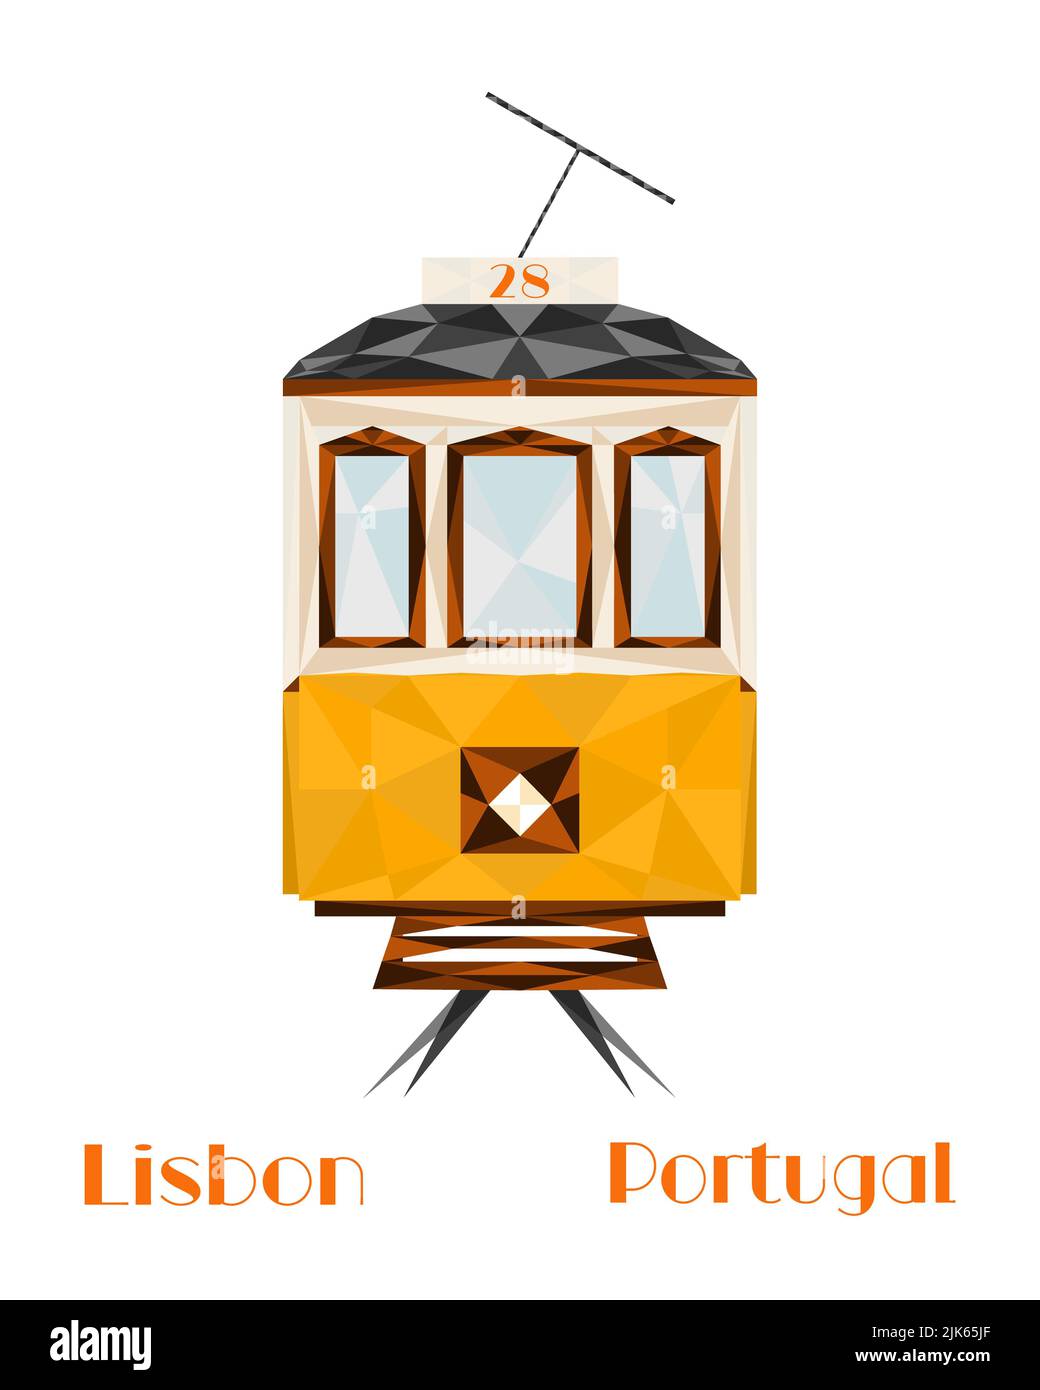 Lisboa, capital de Portugal. Icónico tranvía amarillo de Lisboa. Ilustración de viajes y turismo, diseño moderno de poliestireno bajo. Foto de stock